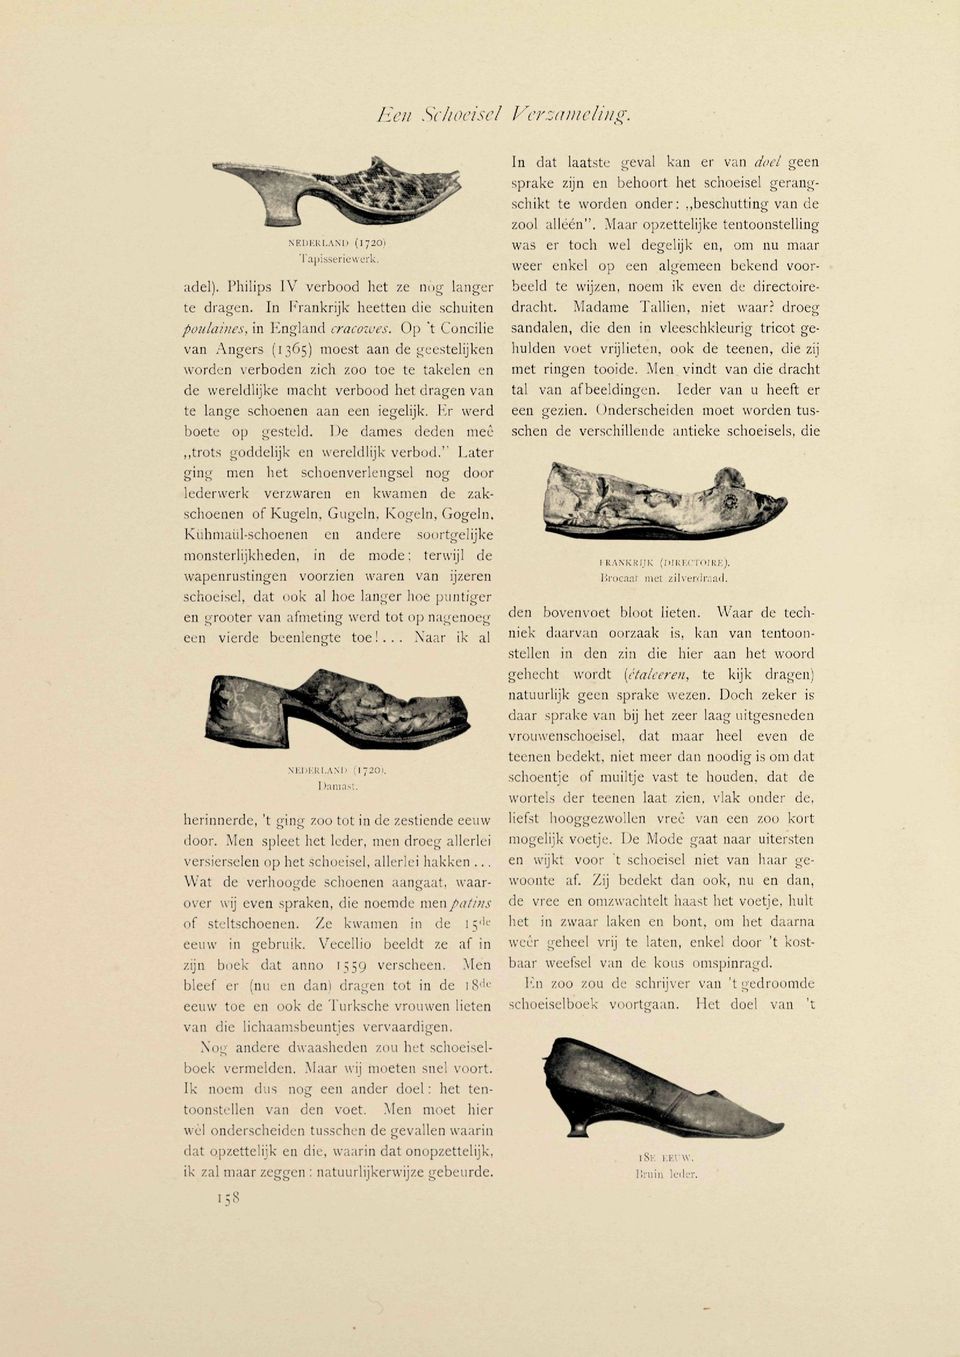 Op "t Concilie van Angers (1365) moest aan de geestelijken worden verboden zich zoo toe te takelen en de wereldlijke macht verbood het dragen van te lange schoenen aan een iegelijk.